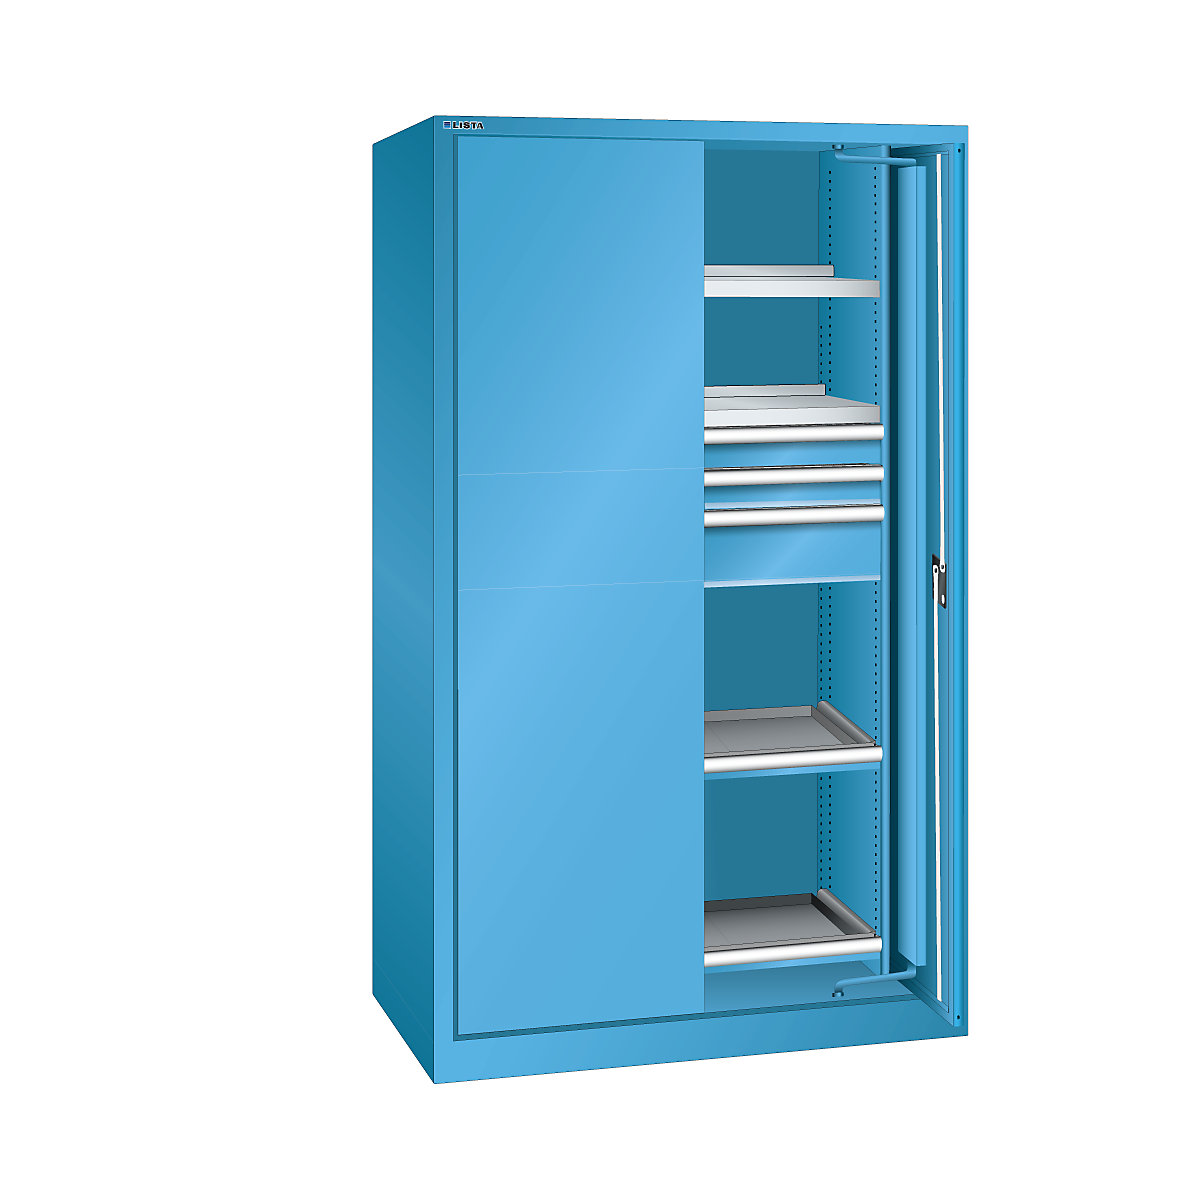 Skříň pro velká zatížení s výkyvnými dveřmi – LISTA, 3 zásuvky, 4 police, s dveřmi z plného plechu, světlá modrá-8